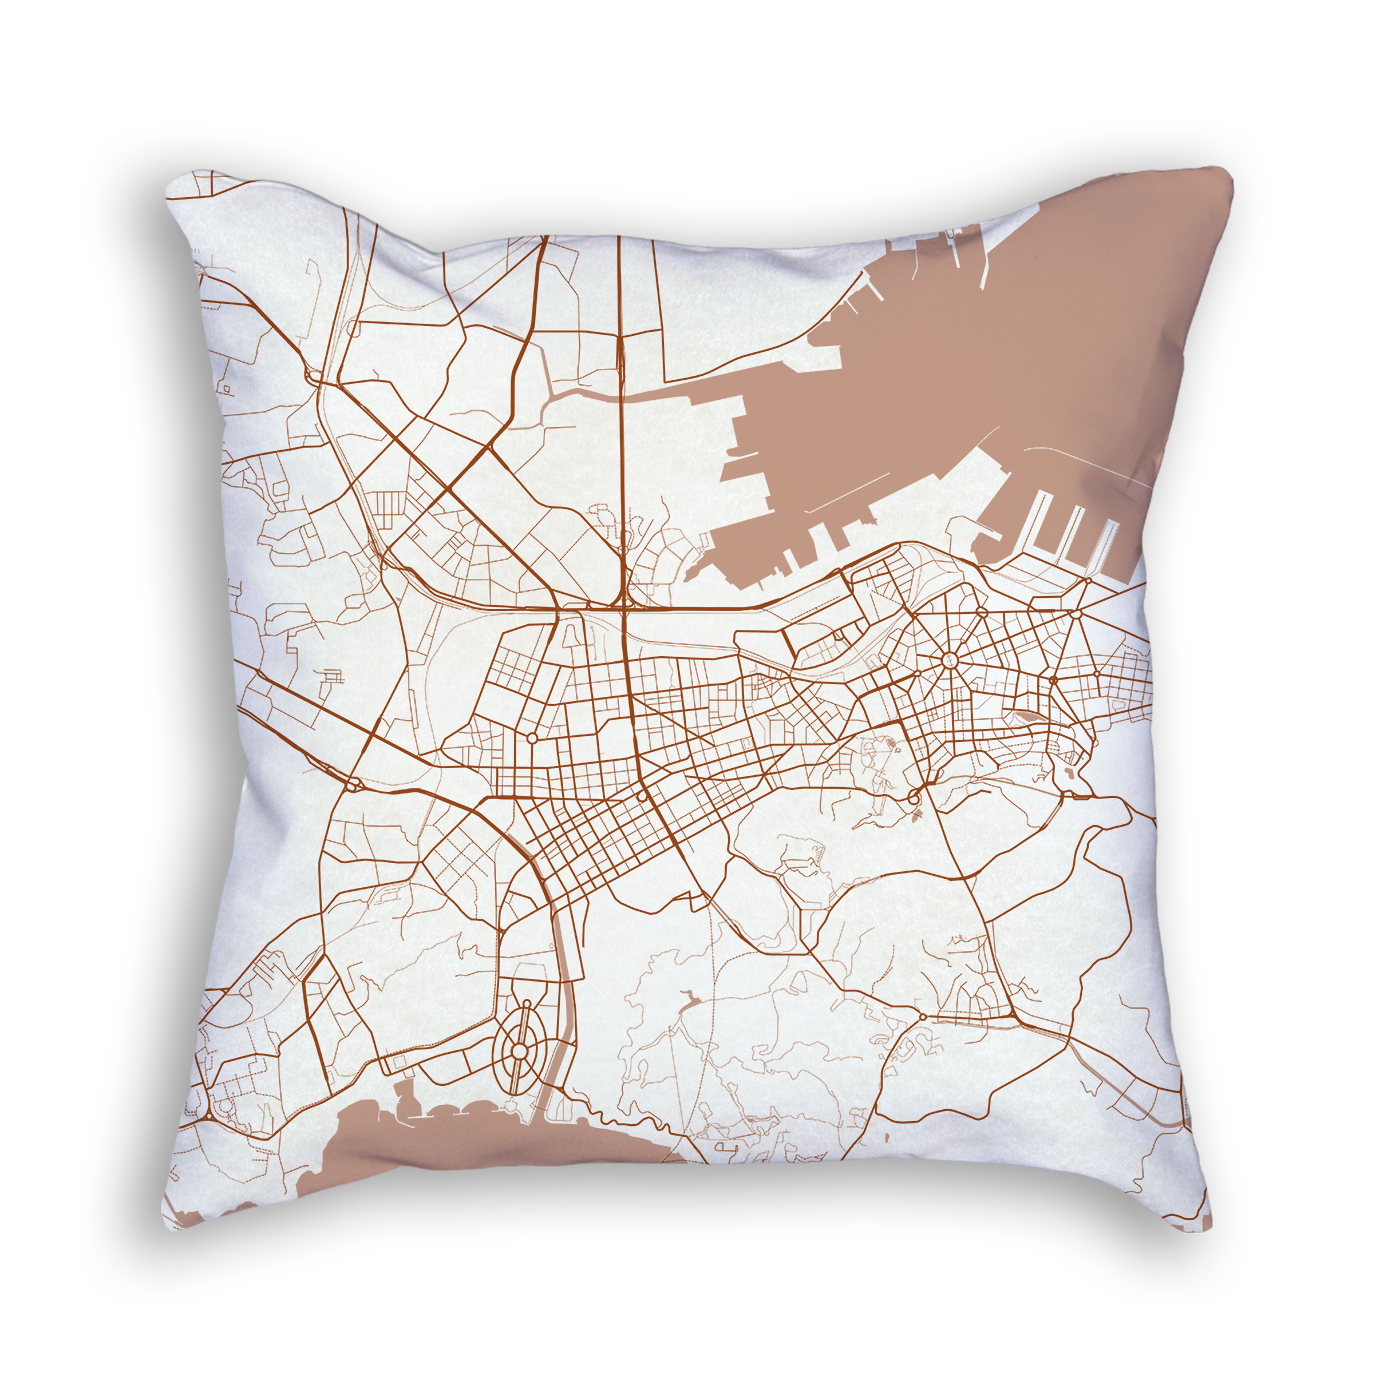 Dalian China City Map Art Decorative Throw Pillow